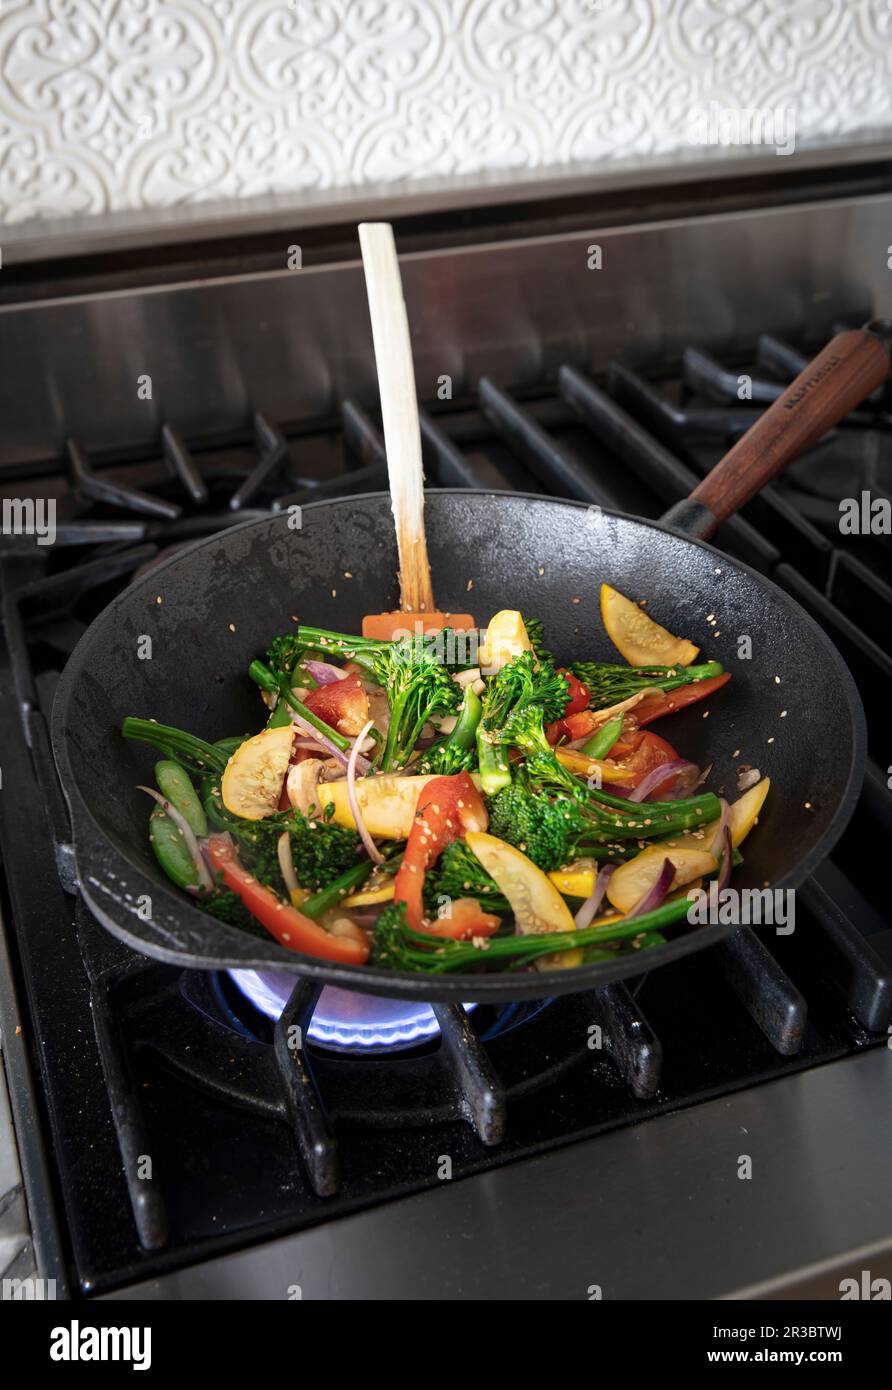 Faites frire les légumes dans la poêle tout en remuant Banque D'Images